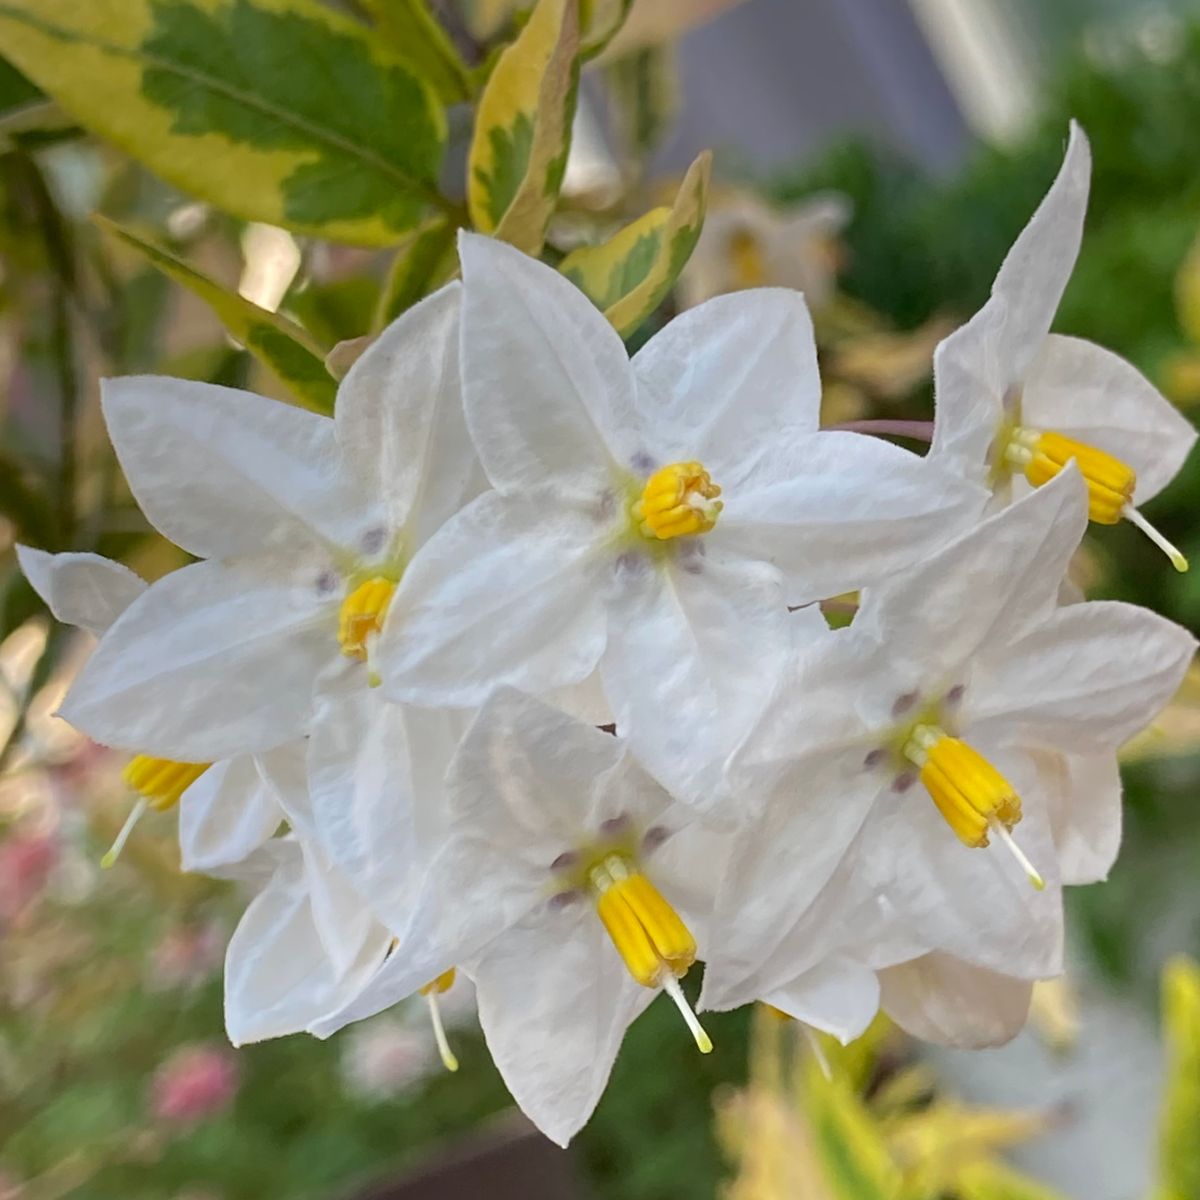 斑入ツルハナナス Solanumjasminoides 庭に咲く花season17 のアルバム みんなの趣味の園芸